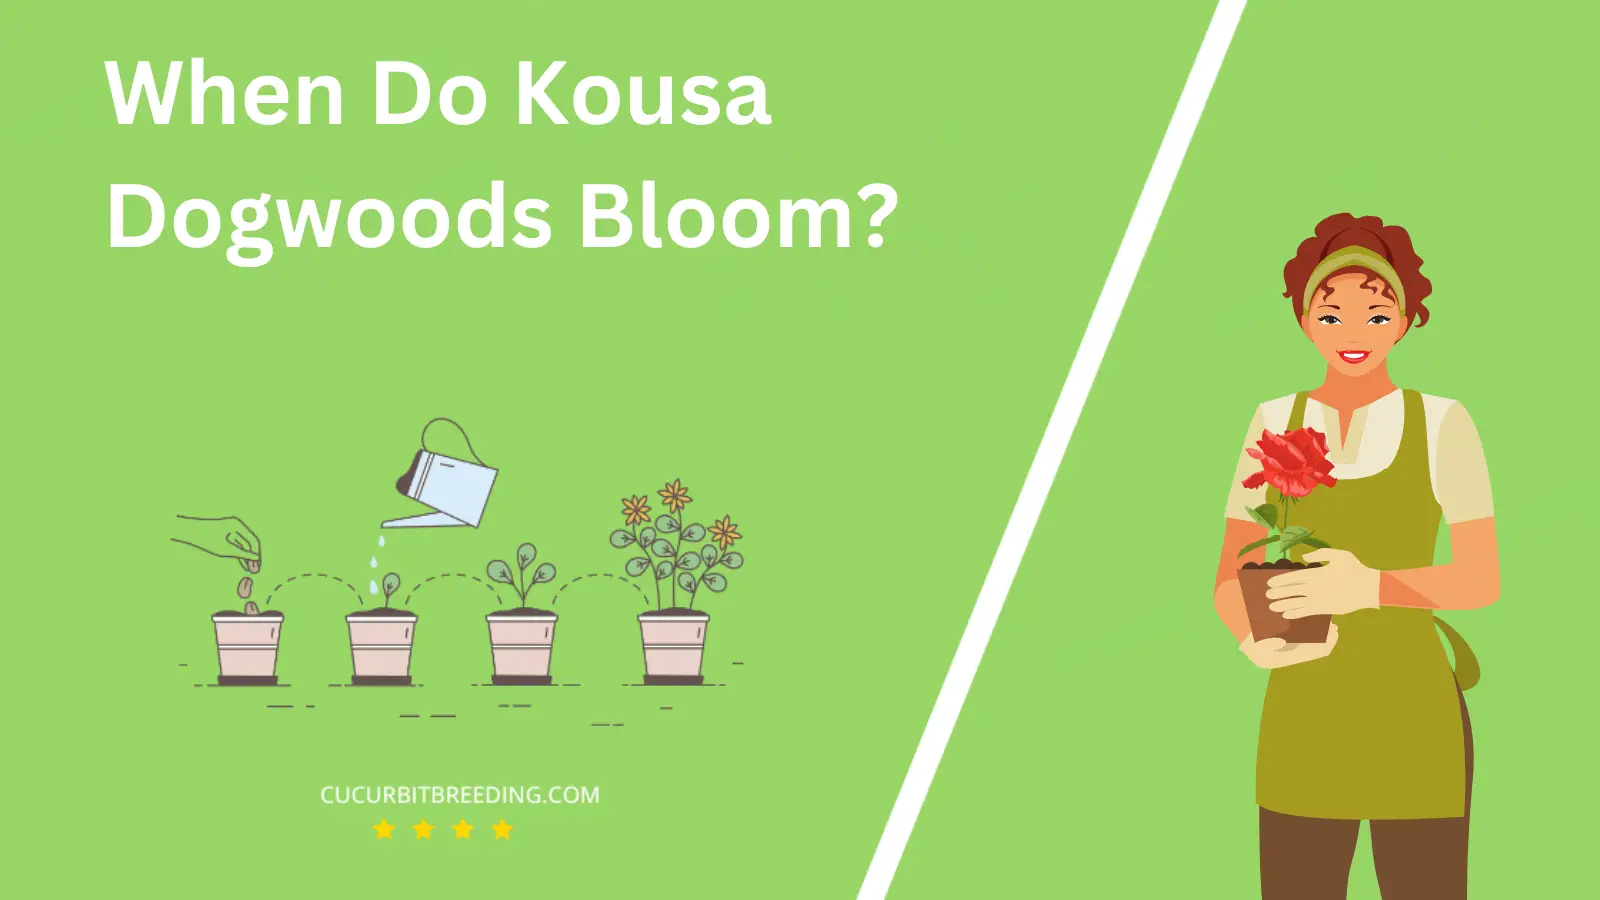 When Do Kousa Dogwoods Bloom?